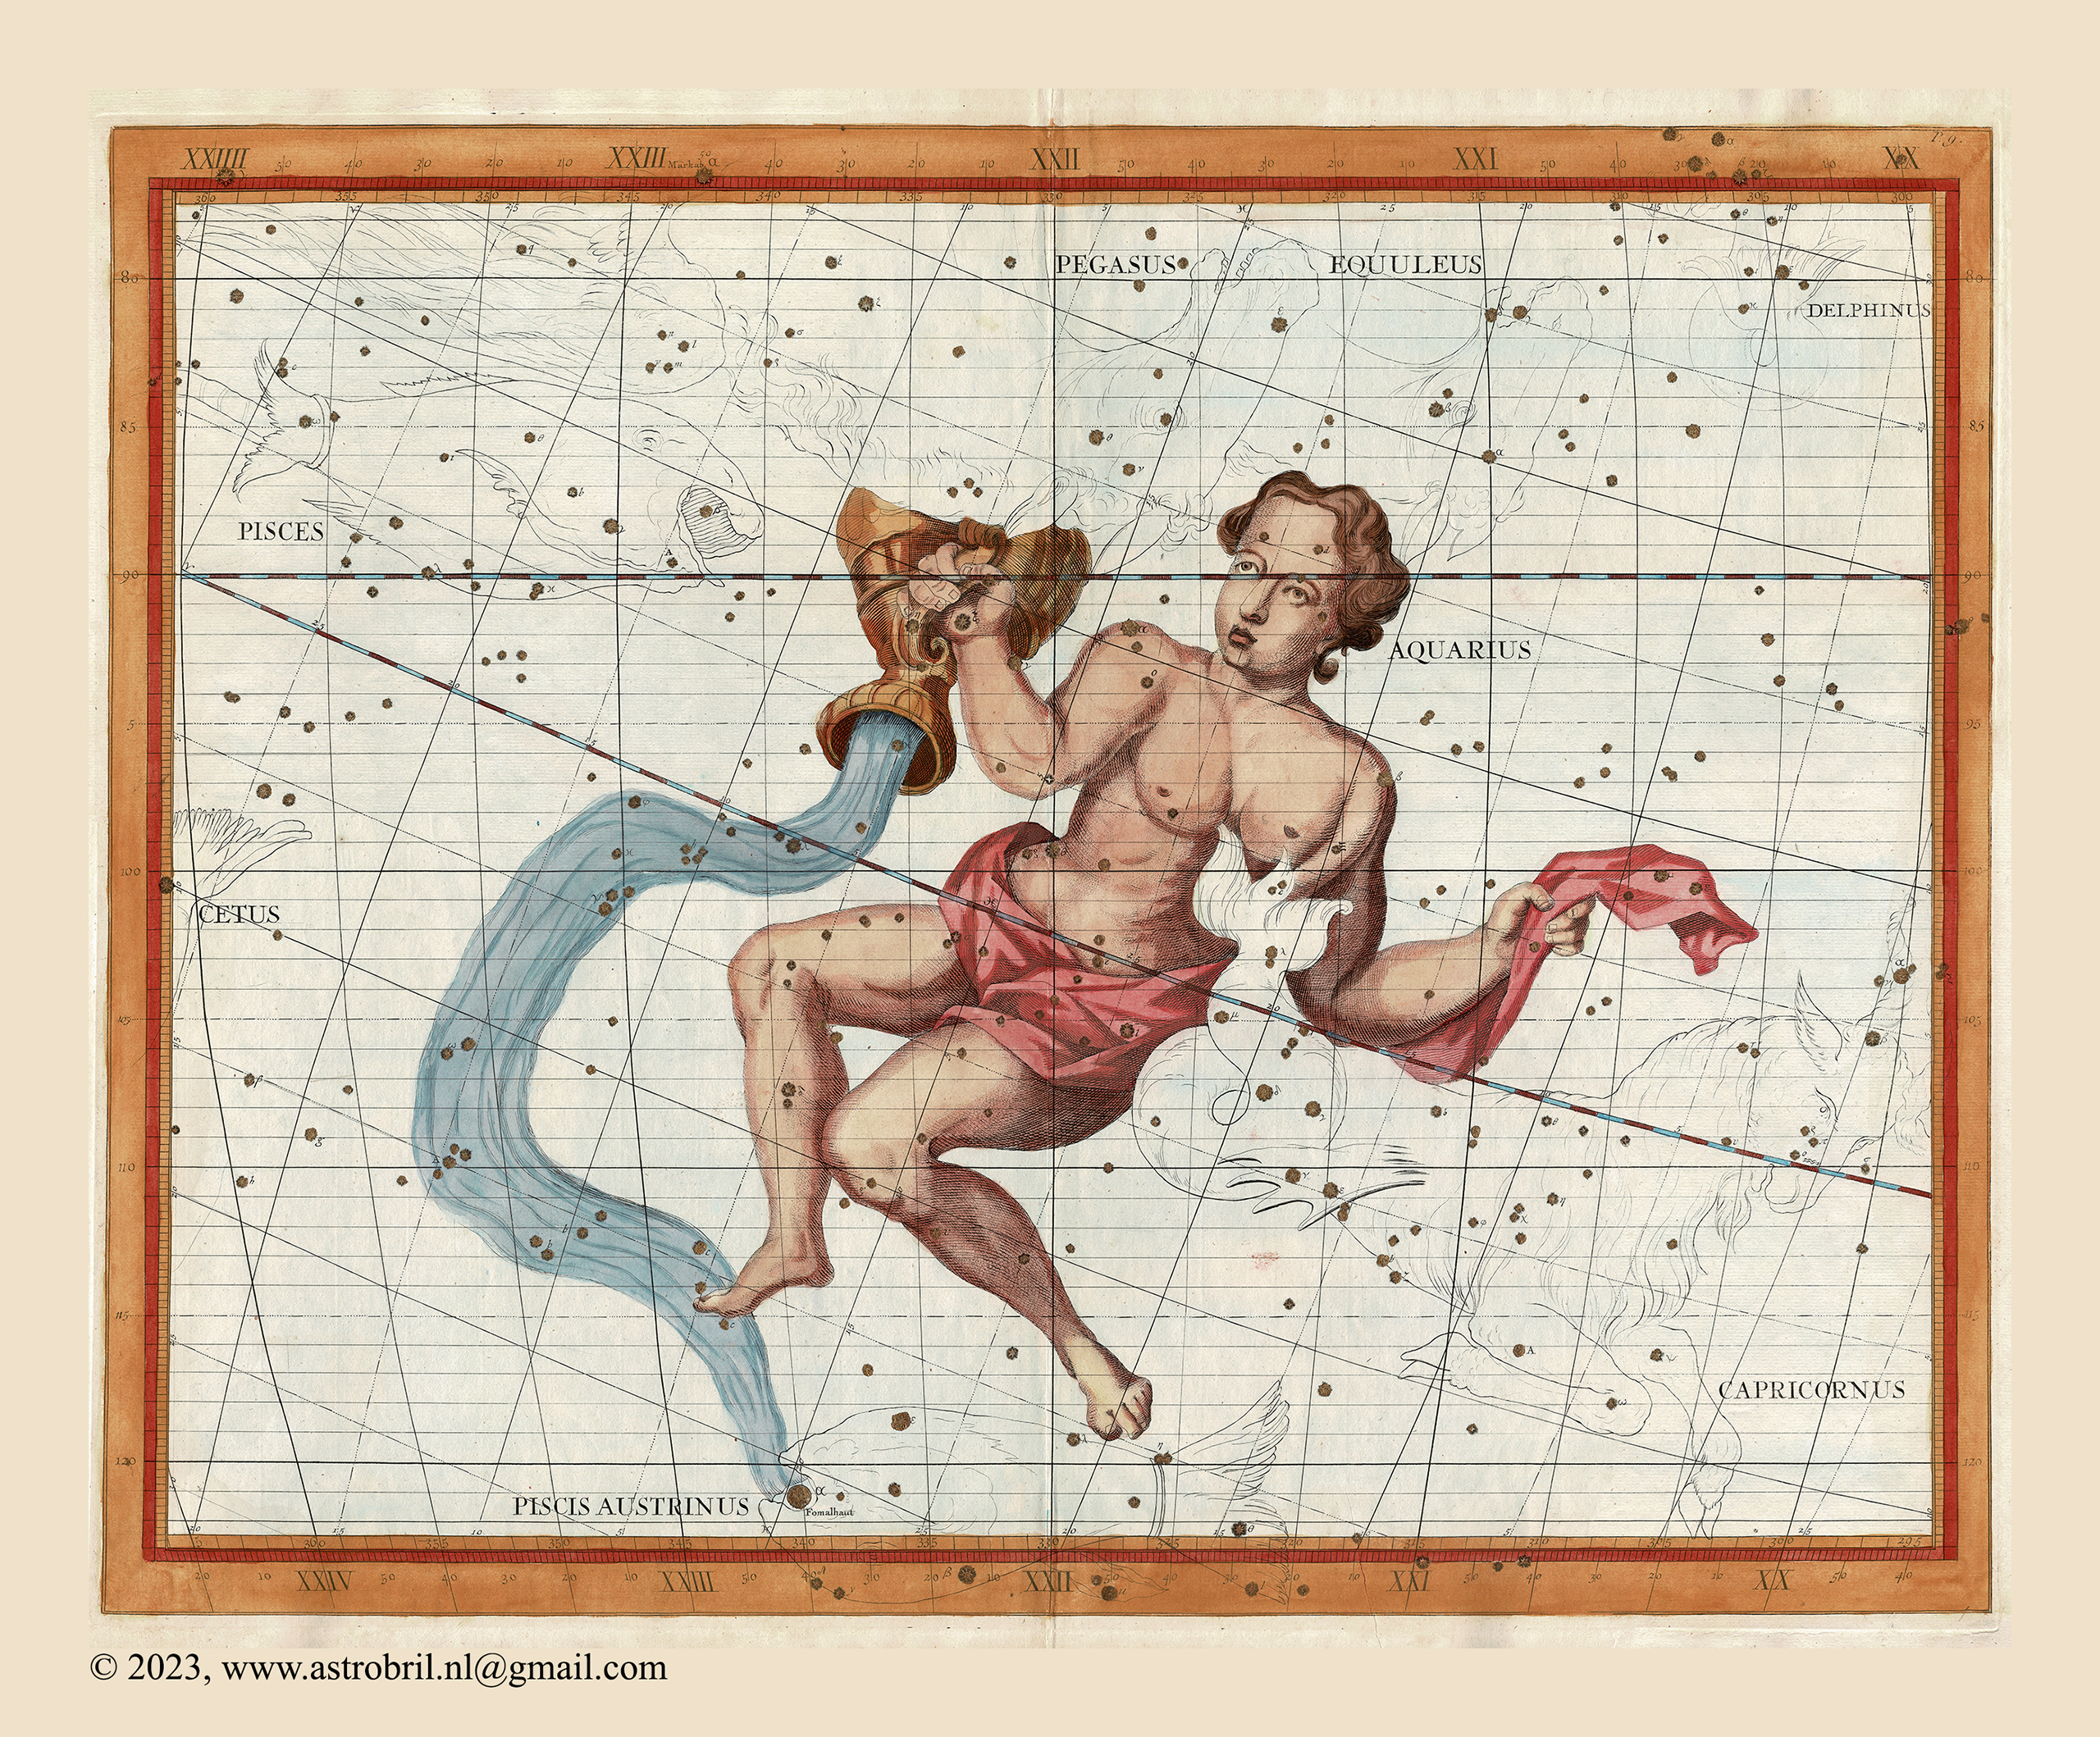 Plate 9 - Aquarius